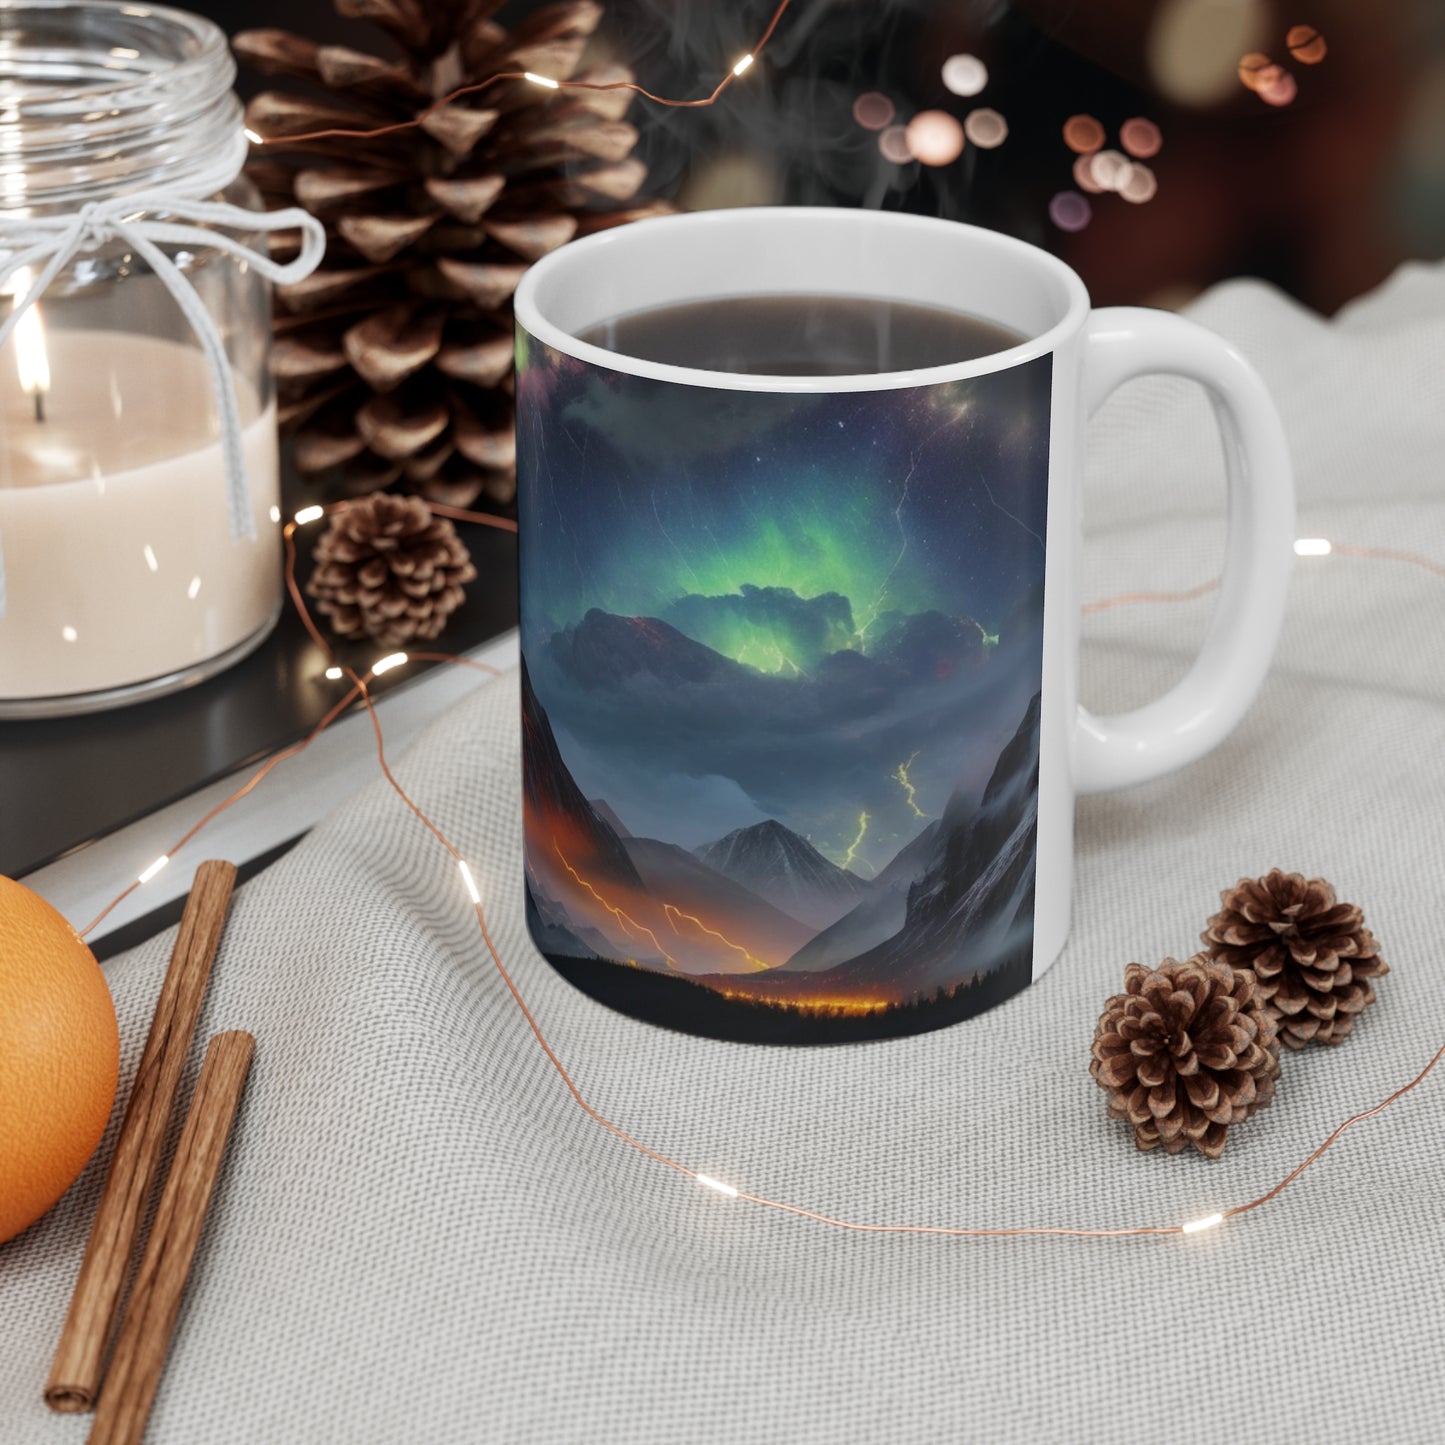 Large Mountain Colourful Lightning Mug - Ceramic Coffee Mug 11oz